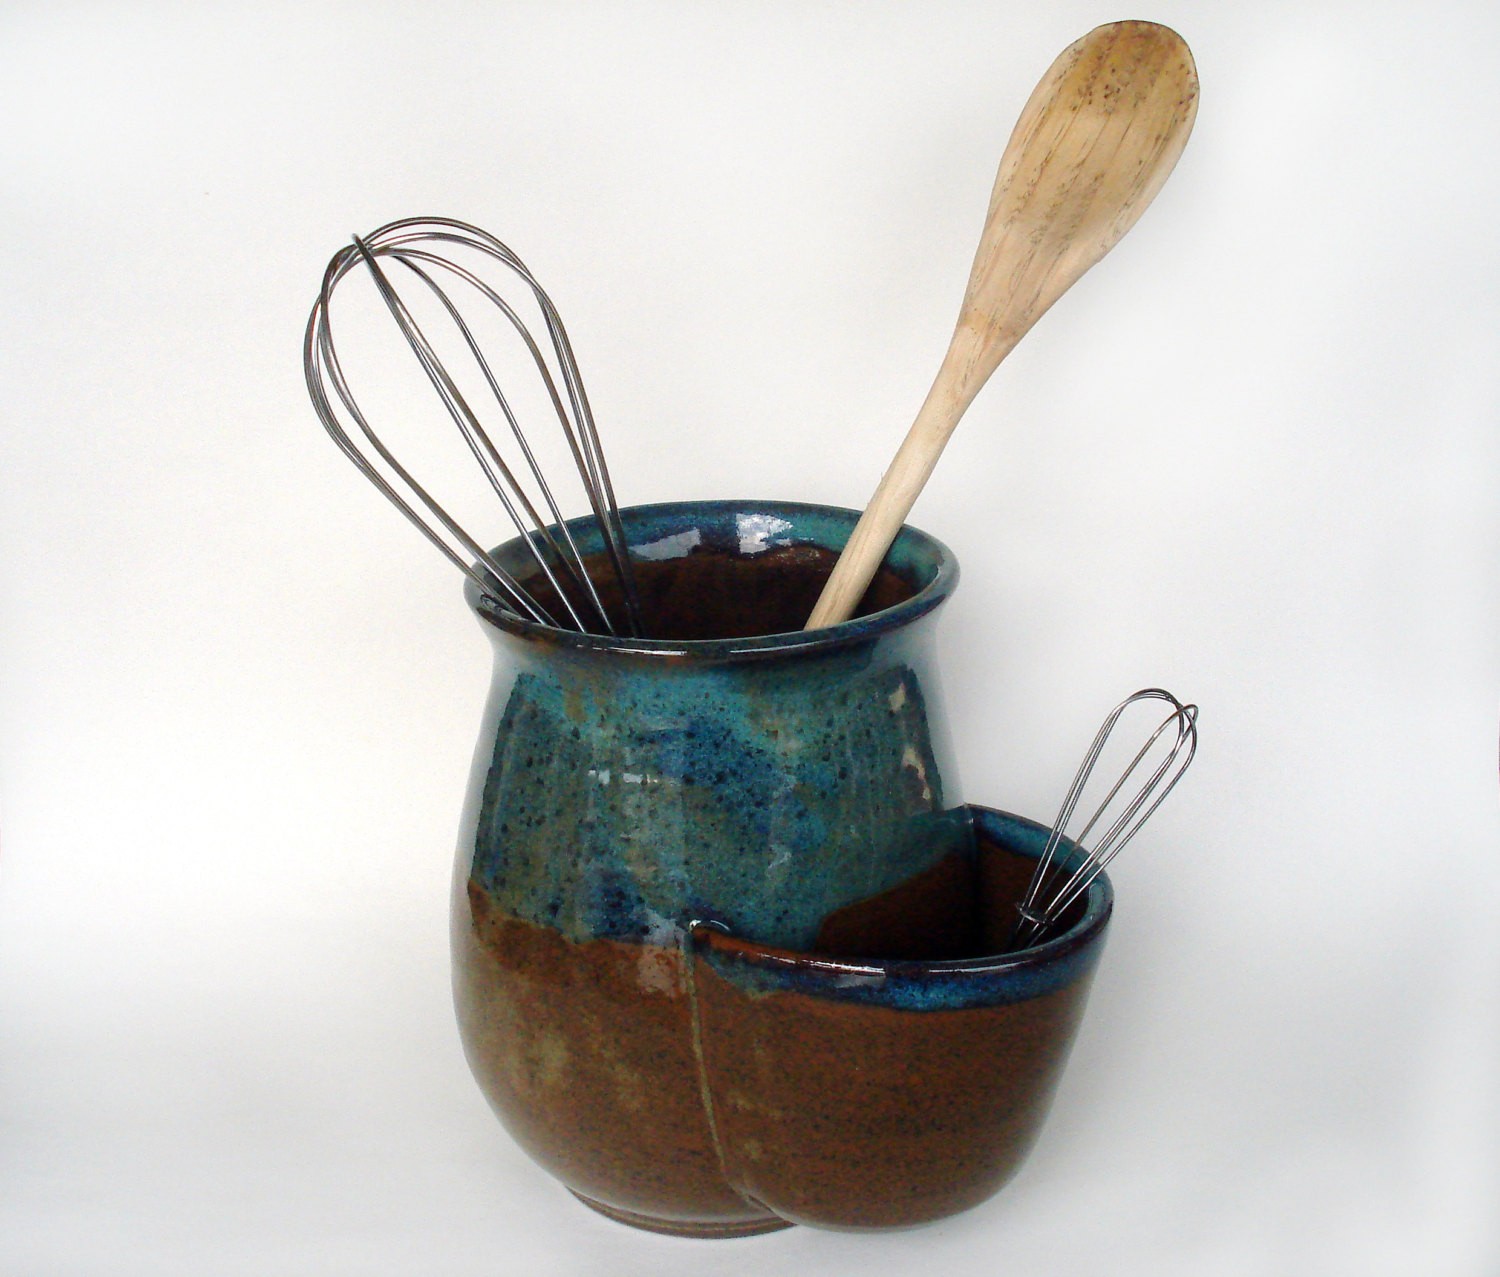 Black ceramic utensil holder